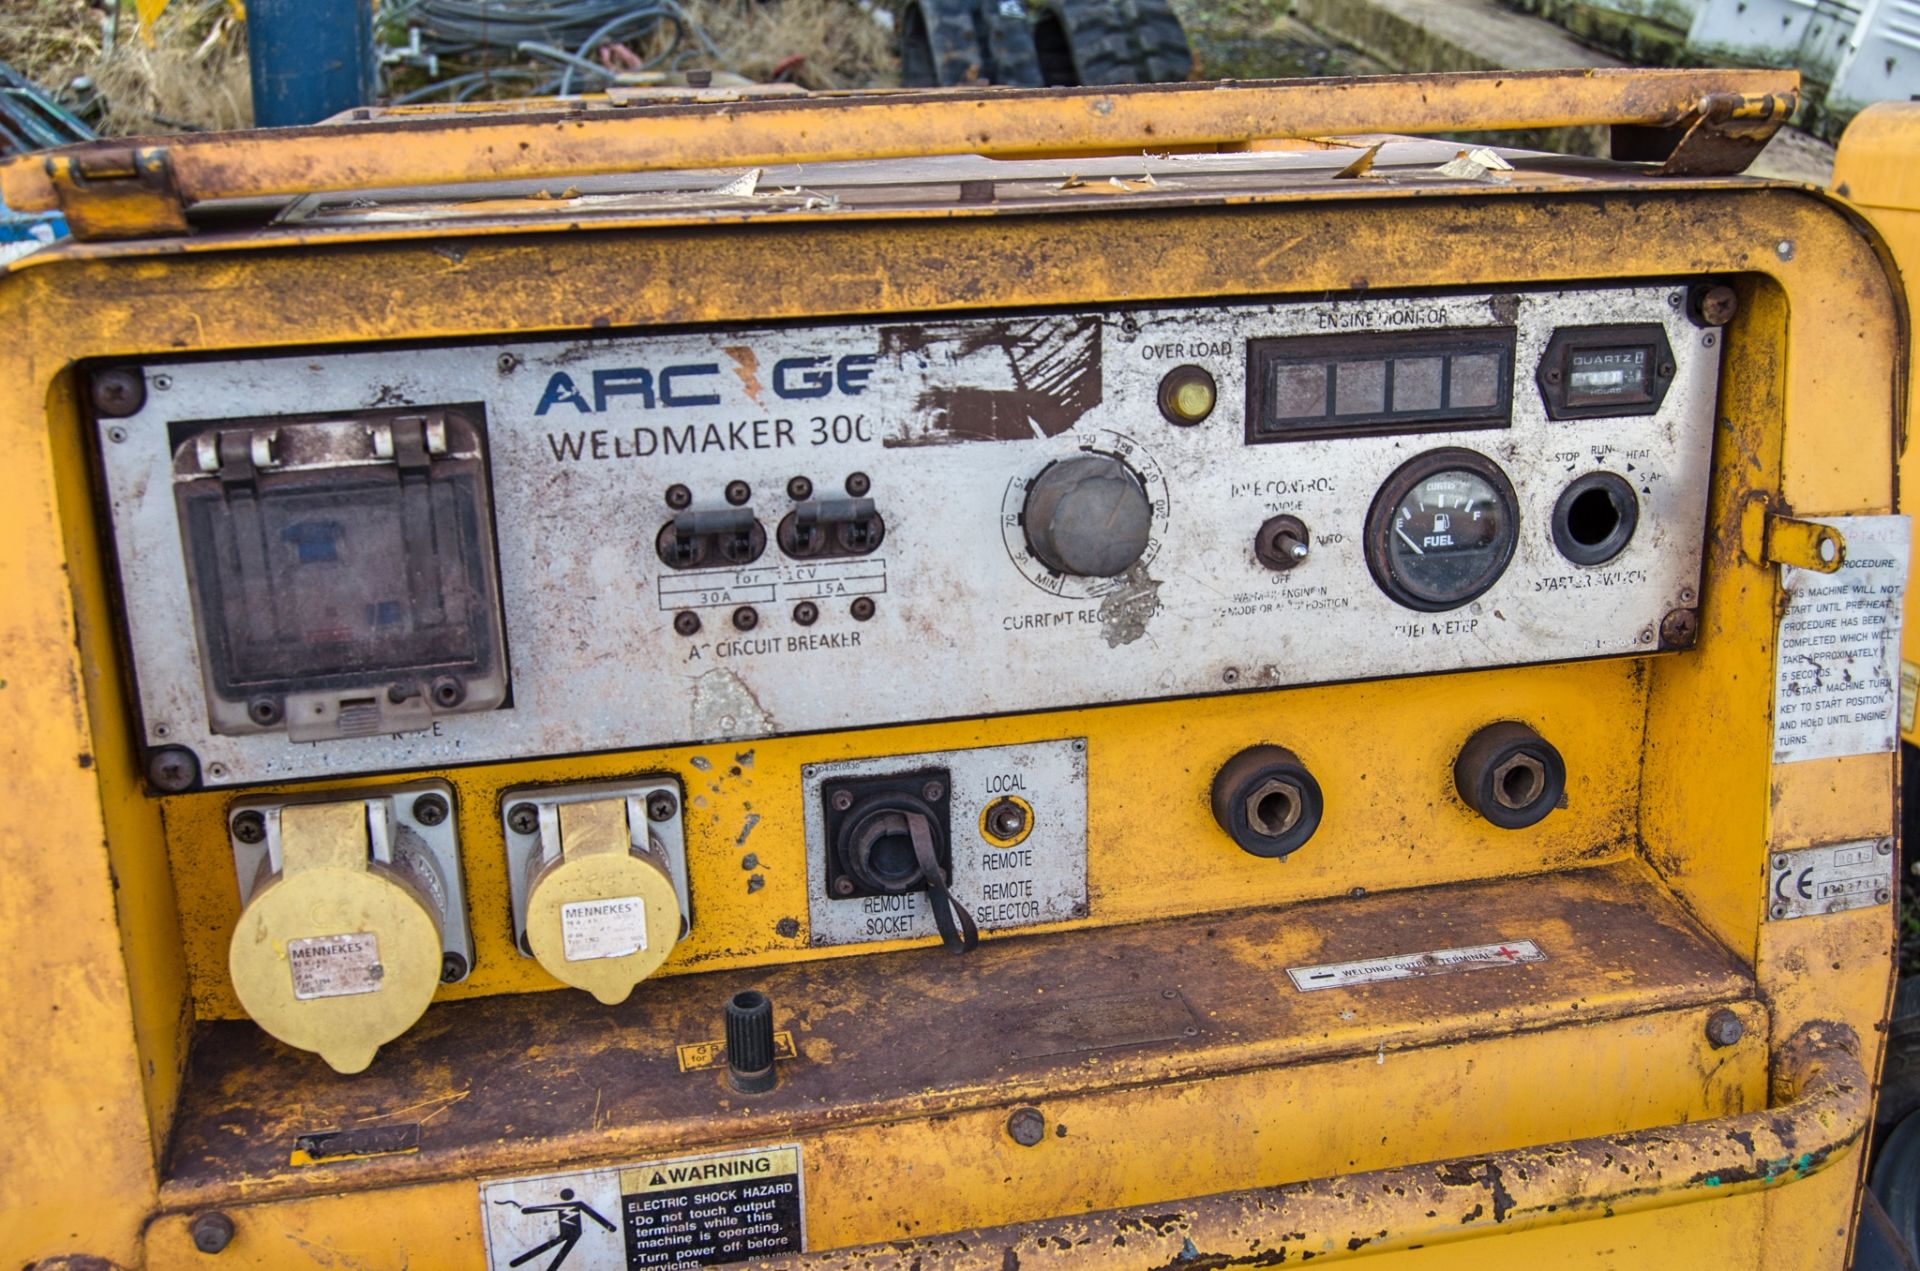 Arc Gen Weldmaker 300 AVC diesel driven mobile welder/generator Year: 2015 S/N: 1302731 Recorded - Image 5 of 7